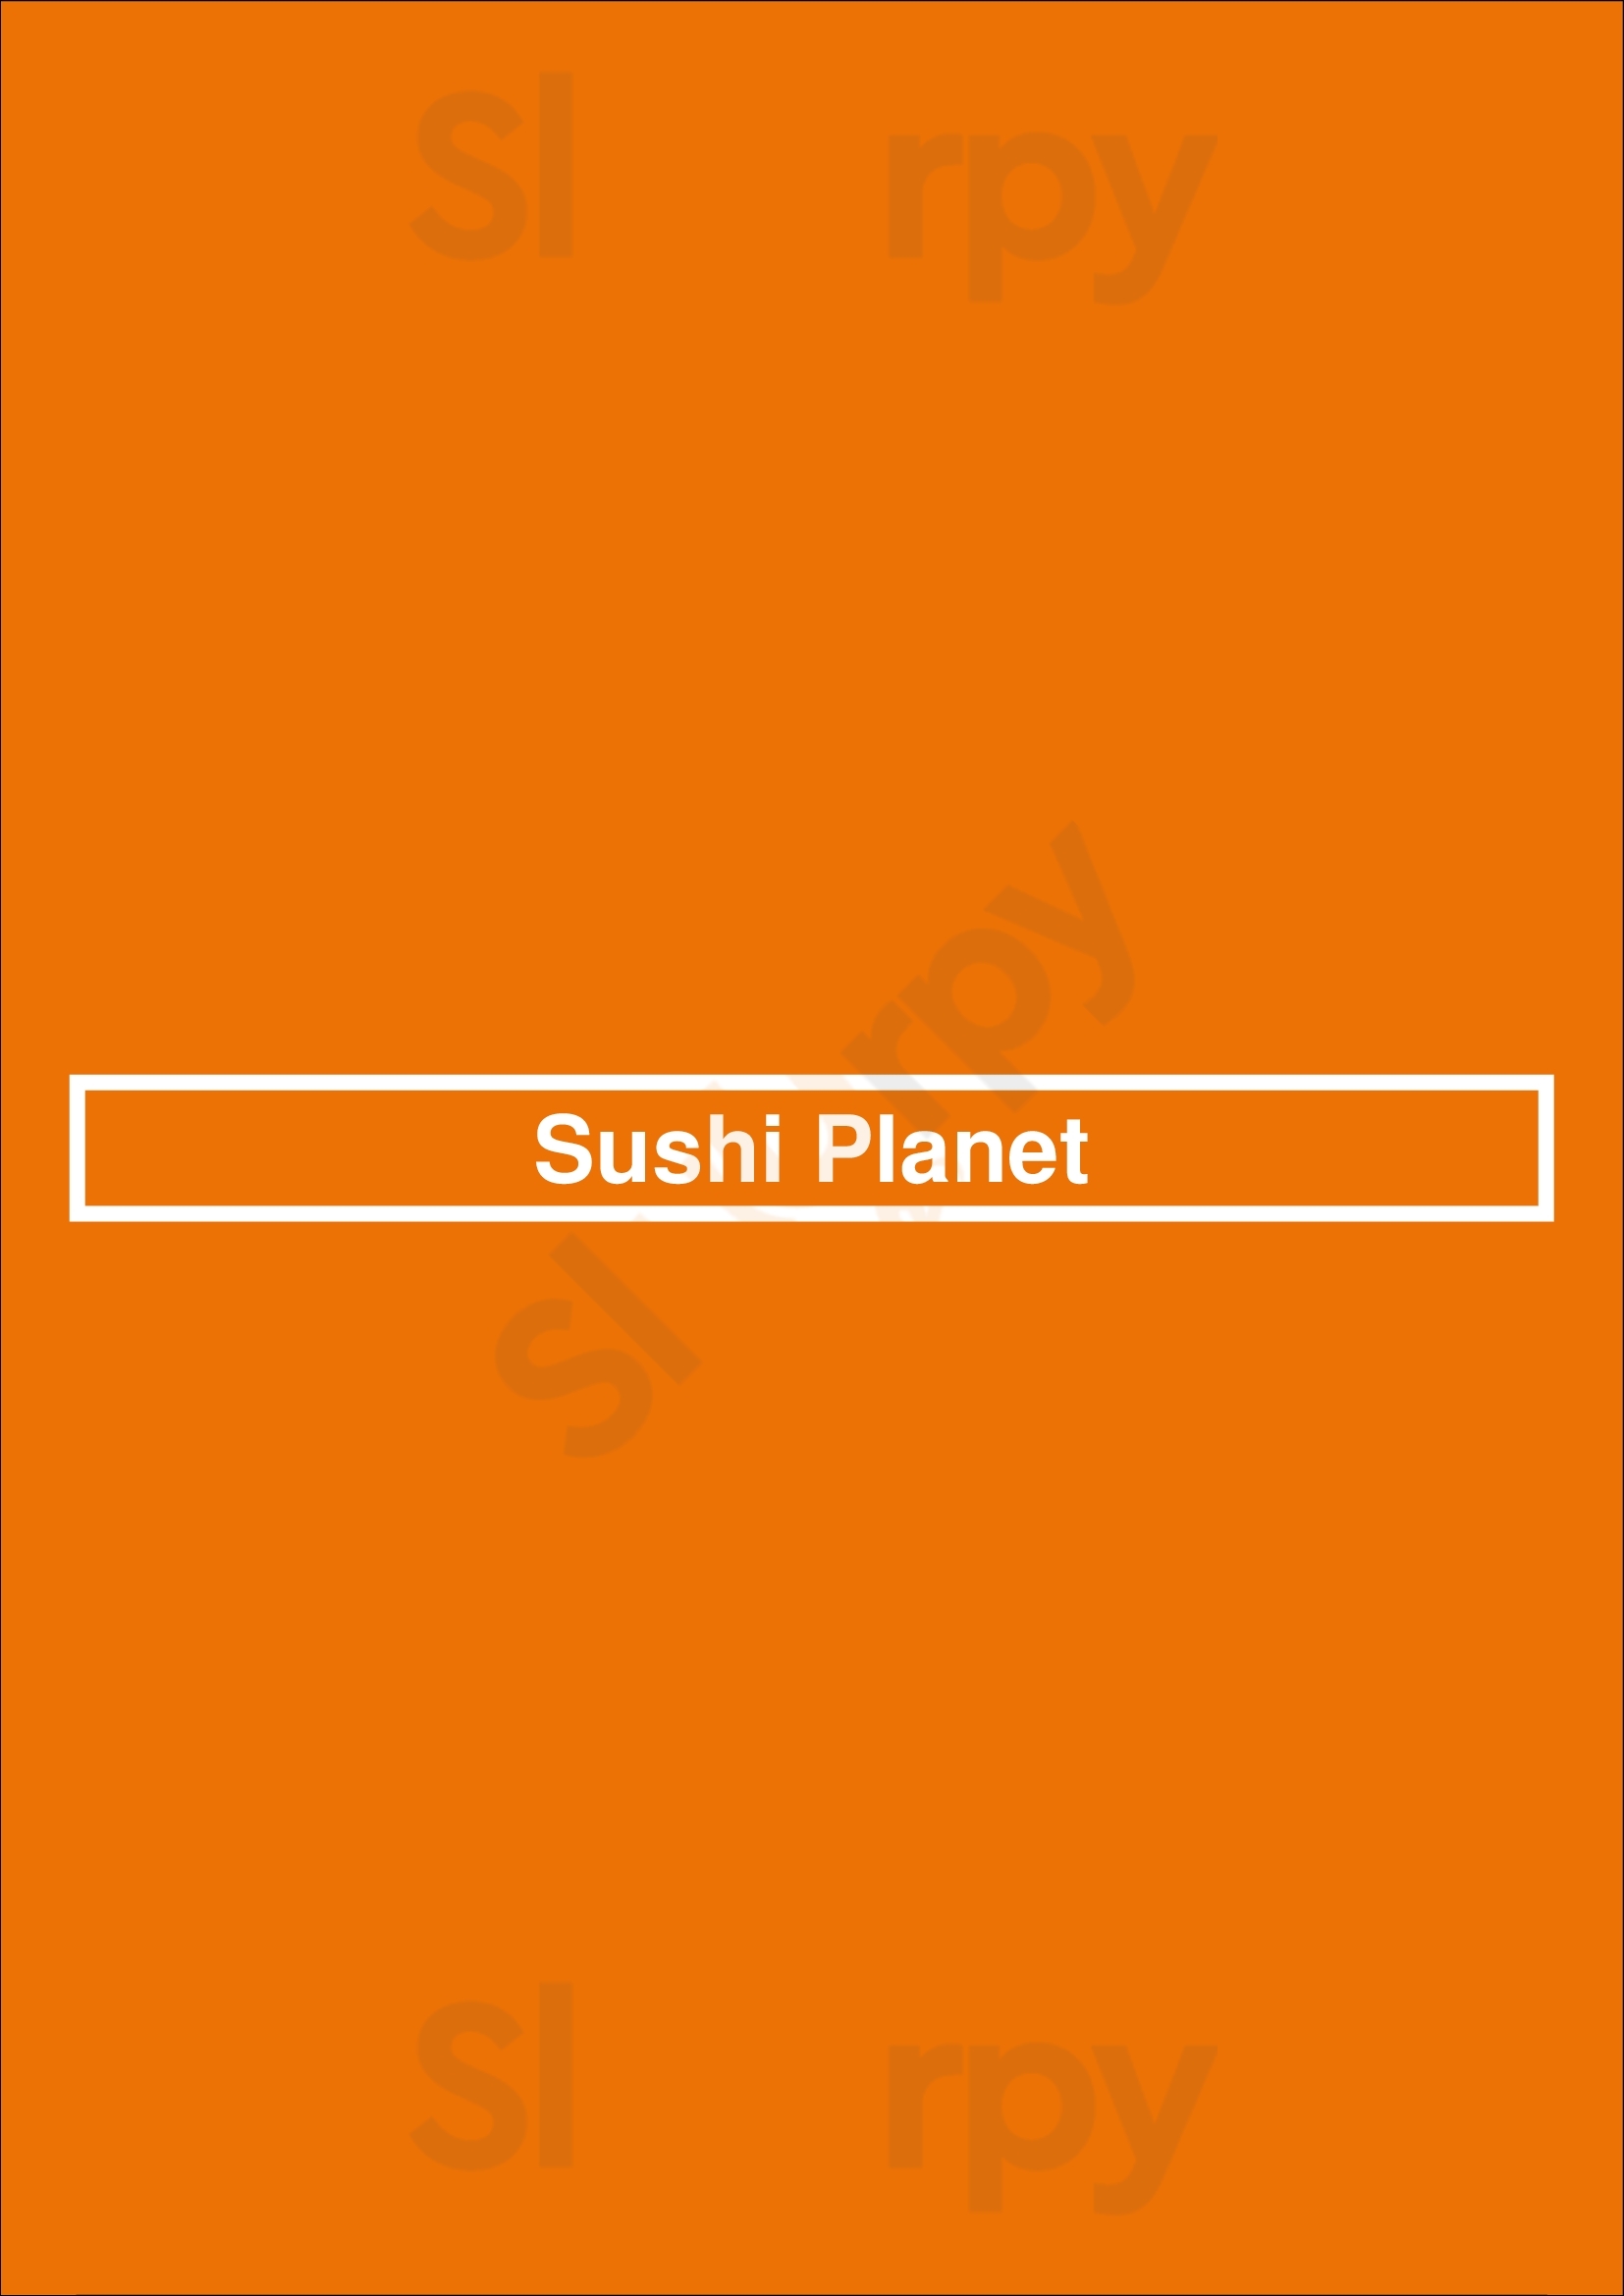 Sushi Planet Adelaide Menu - 1